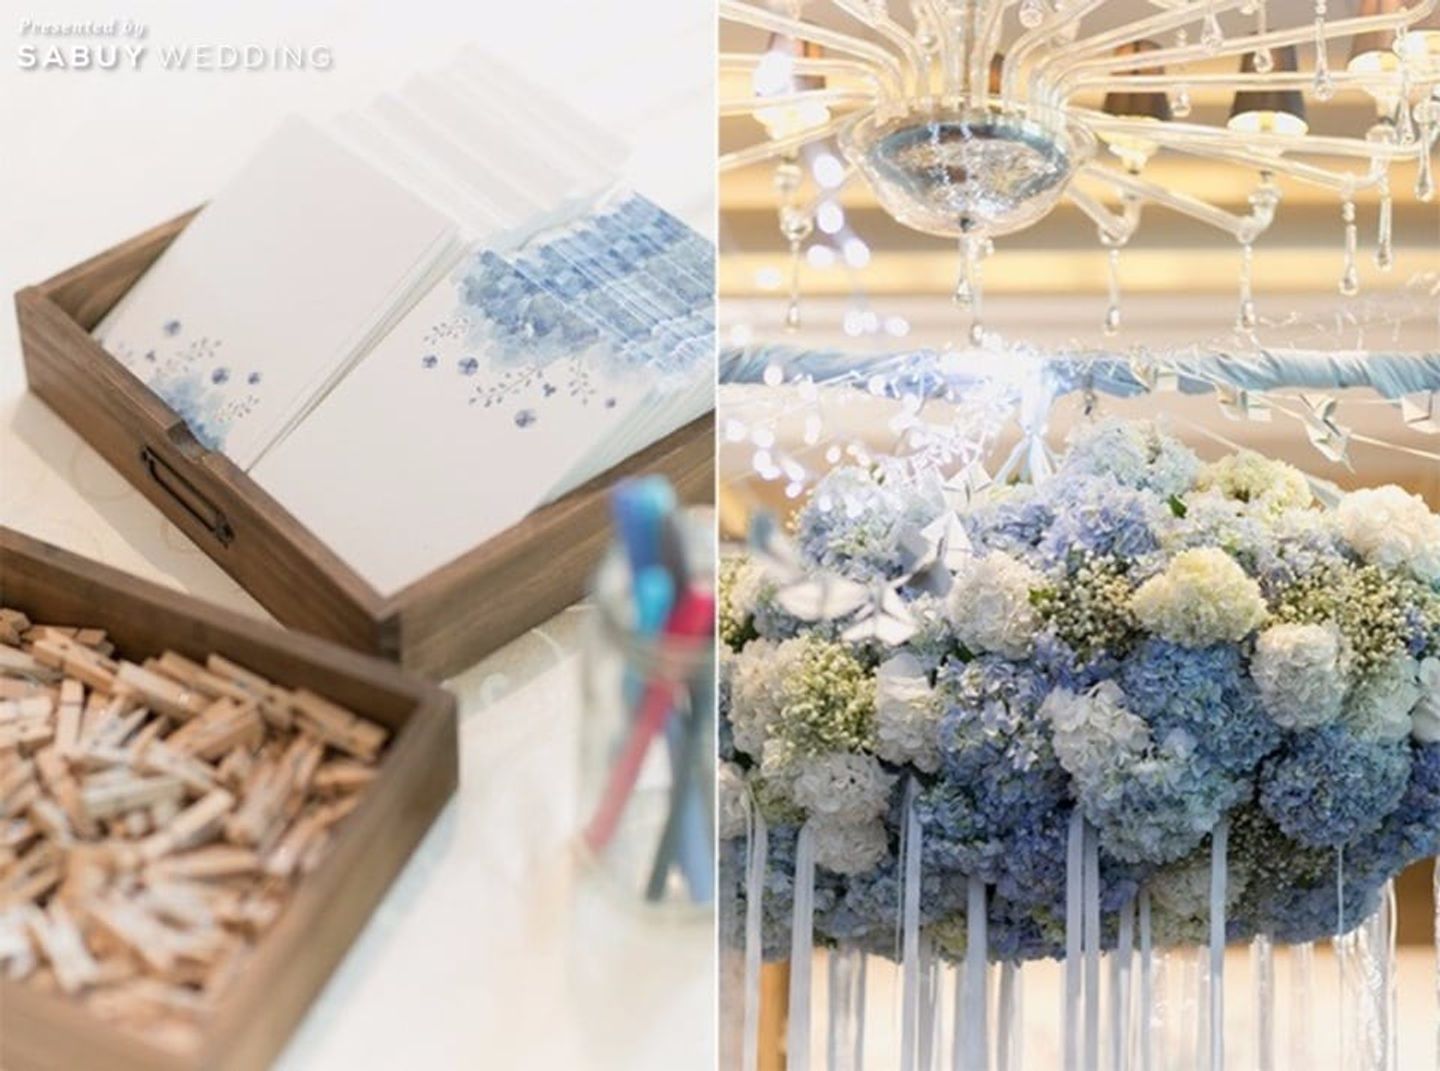 จัดดอกไม้งานแต่ง,ธีมงานแต่ง รีวิวงานแต่งธีมรัสติกคันทรี่ ดูดีด้วยสีฟ้าอมเทา @Siam Kempinski Bangkok